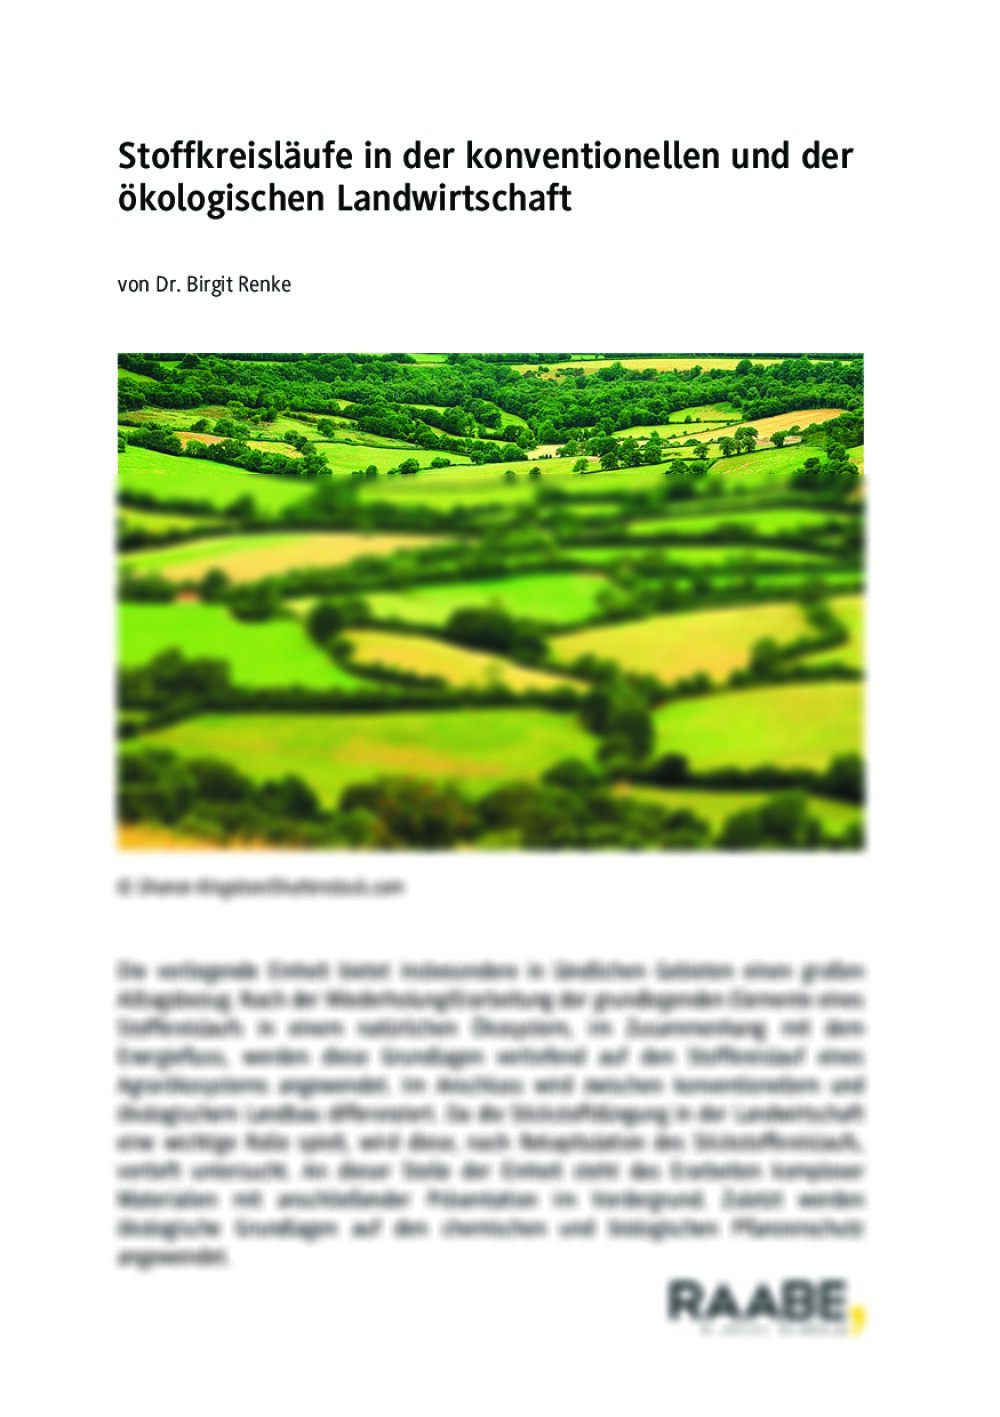 Konventionelle und ökologische Landwirtschaft - Seite 1